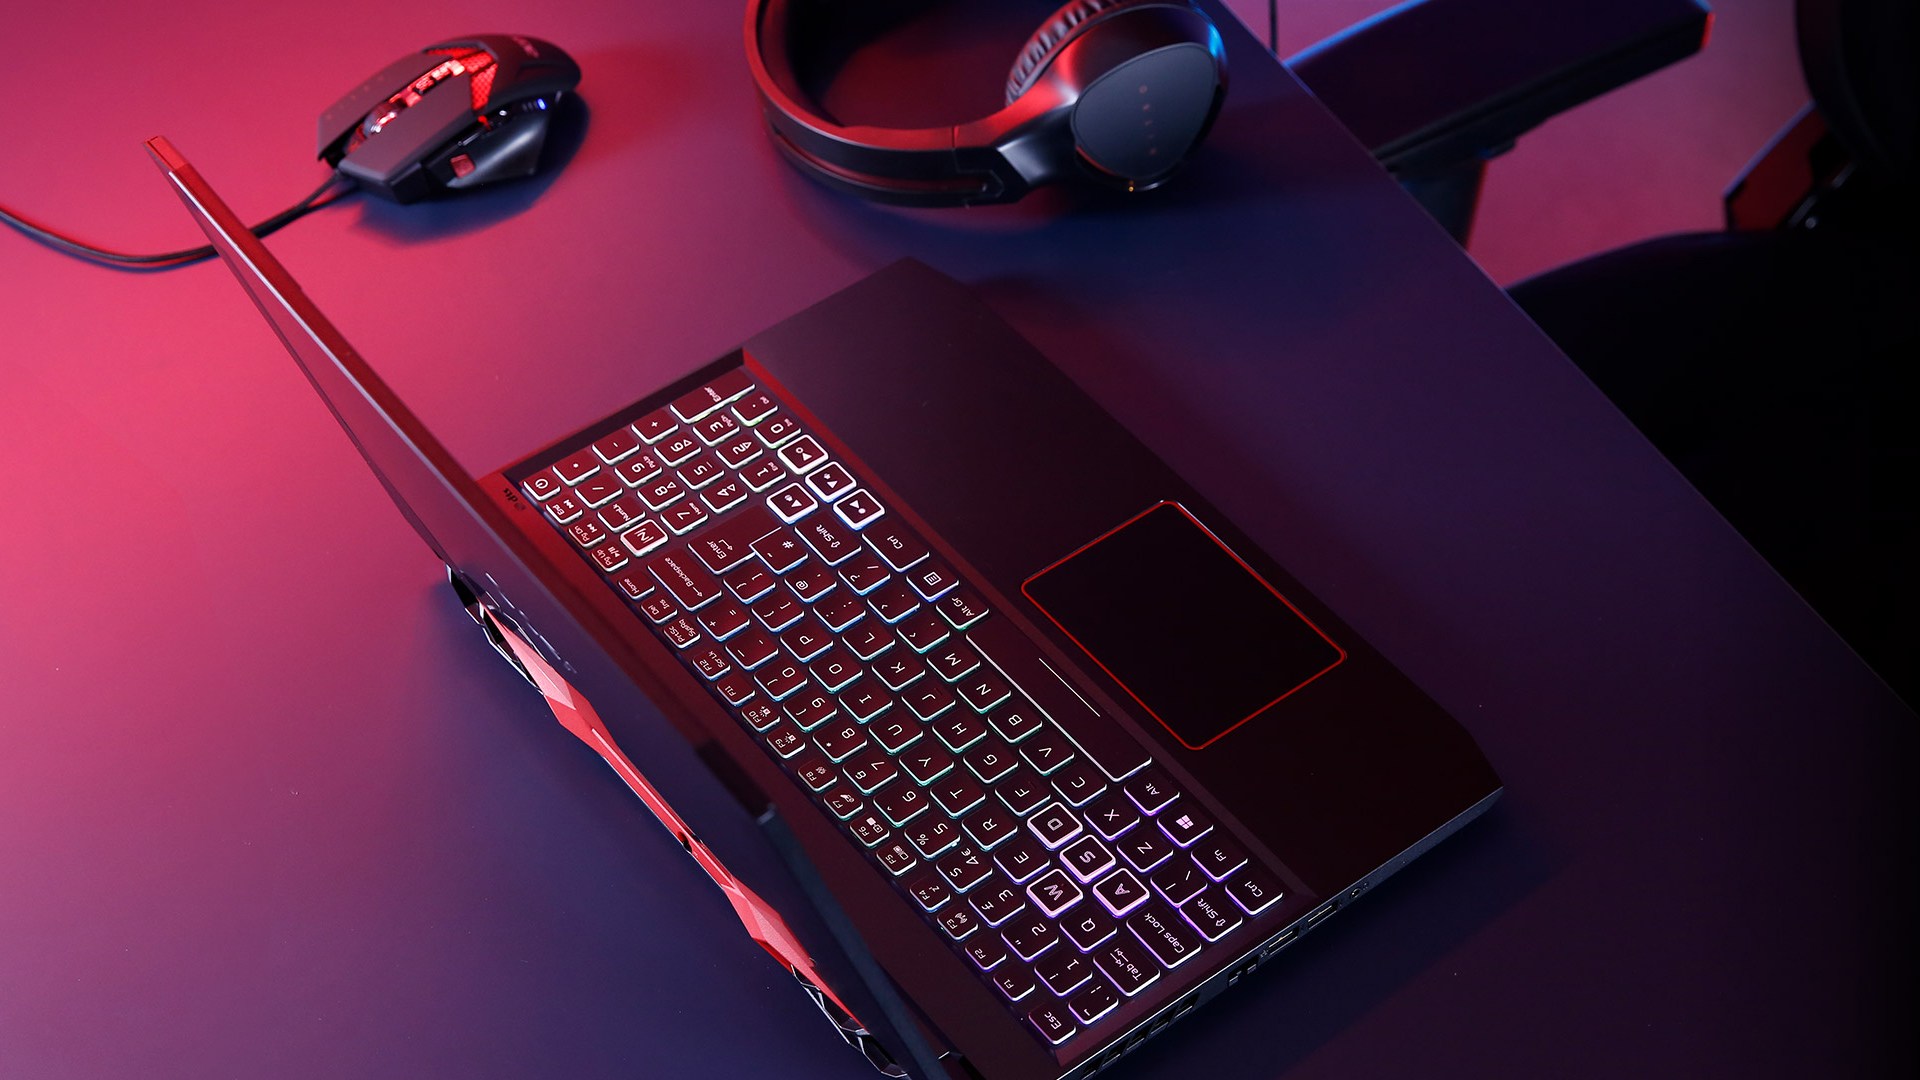 Đang tìm kiếm một laptop chơi game chuyên nghiệp và đáng tin cậy? Điều gì có thể tốt hơn là chiêm ngưỡng Acer Nitro 5 với thiết kế bắt mắt và tính năng mạnh mẽ. Xem ngay hình ảnh liên quan để nâng cao hiểu biết của bạn về sản phẩm này.